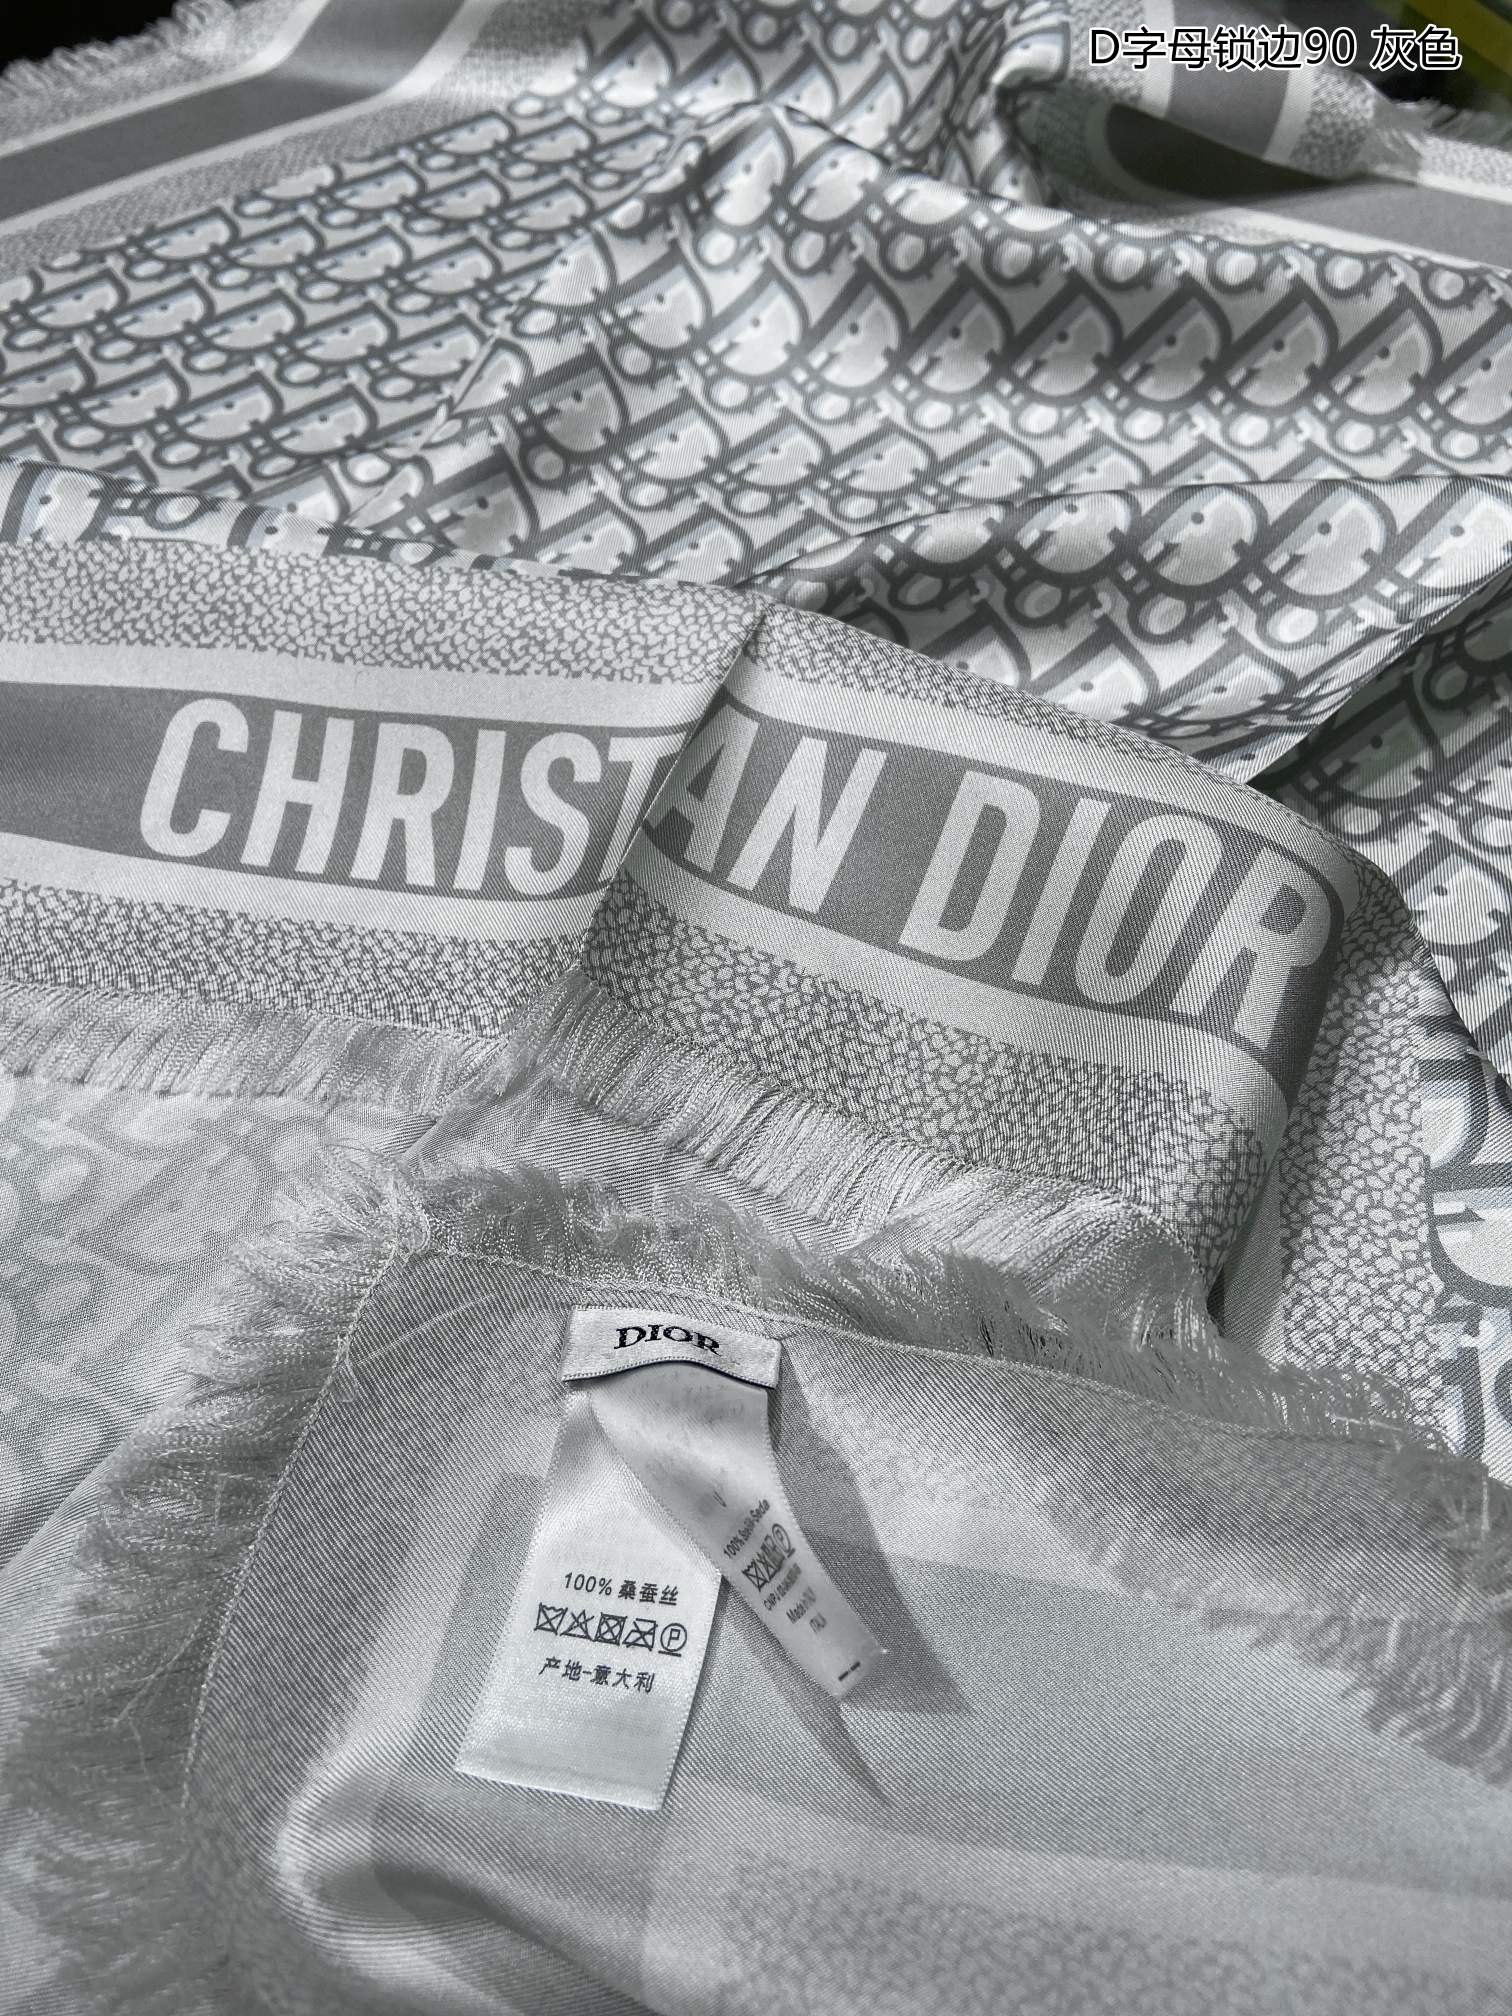 爆款真丝来啦Dior最最新的专柜主打款D字母锁边90真丝方巾度假及日常都非常好搭配的款订单私流一看到就想